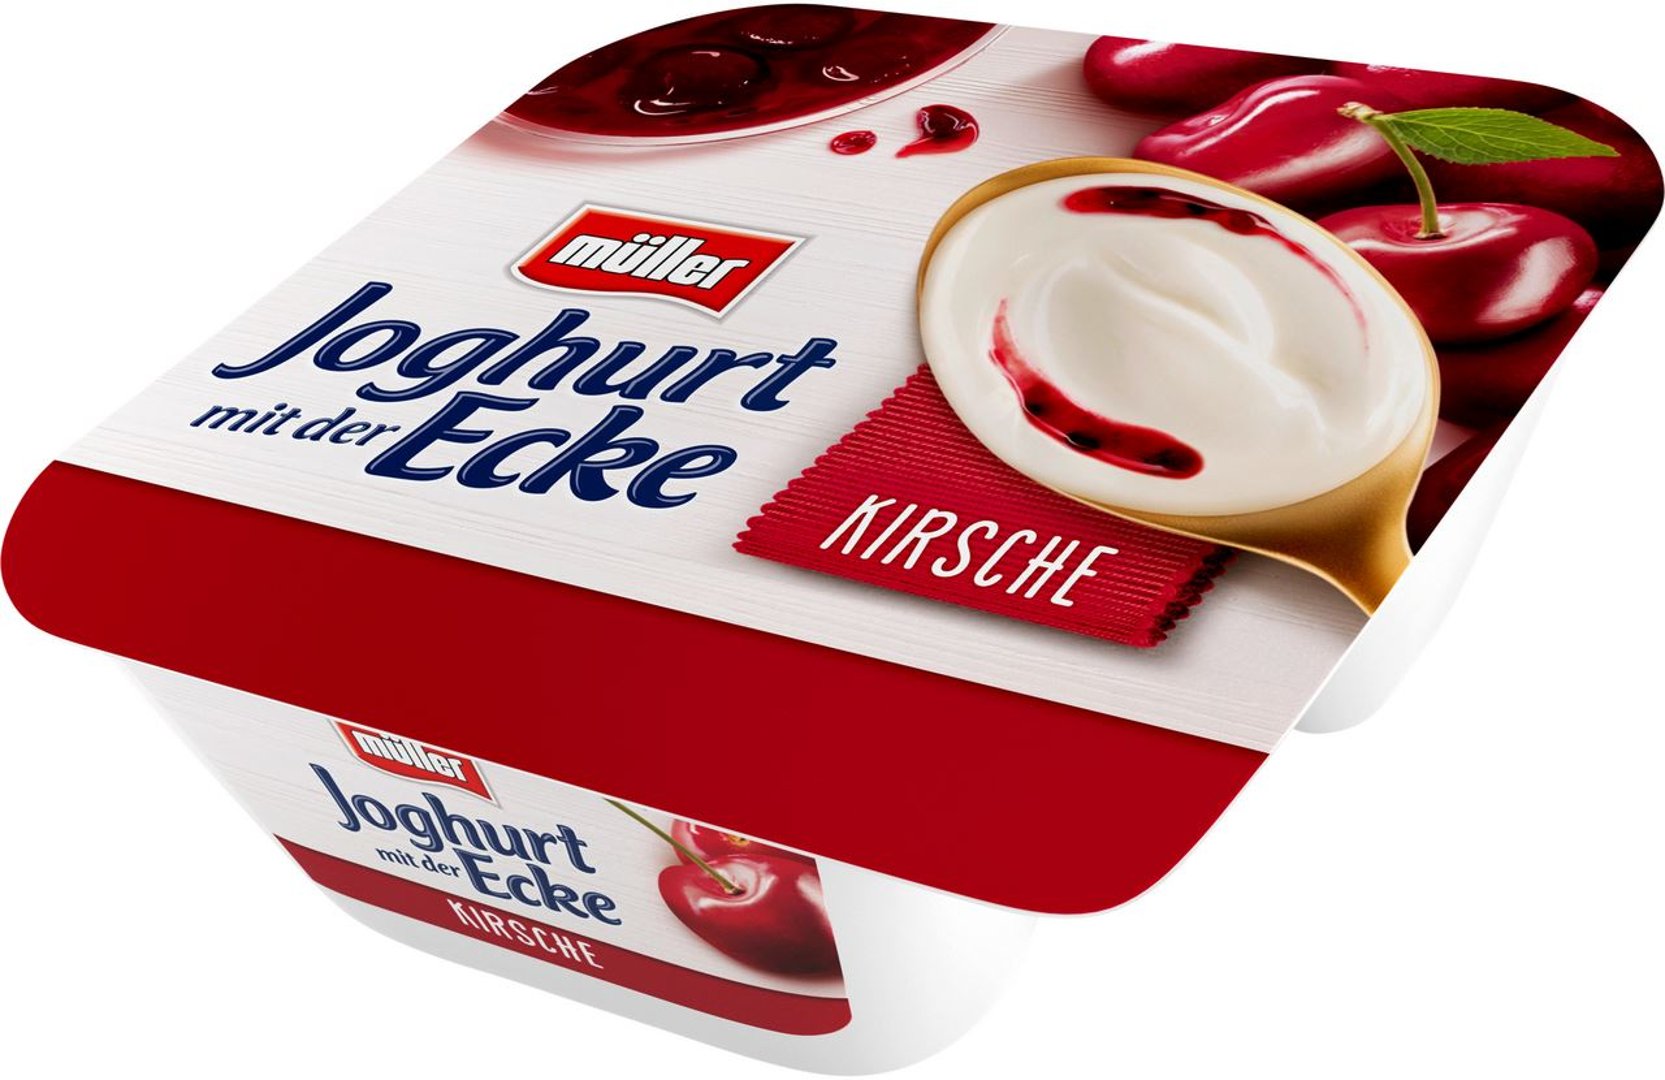 müller - Joghurt mit der Ecke Kirsche 3,5 % Fett im Milchanteil - 150 g Becher